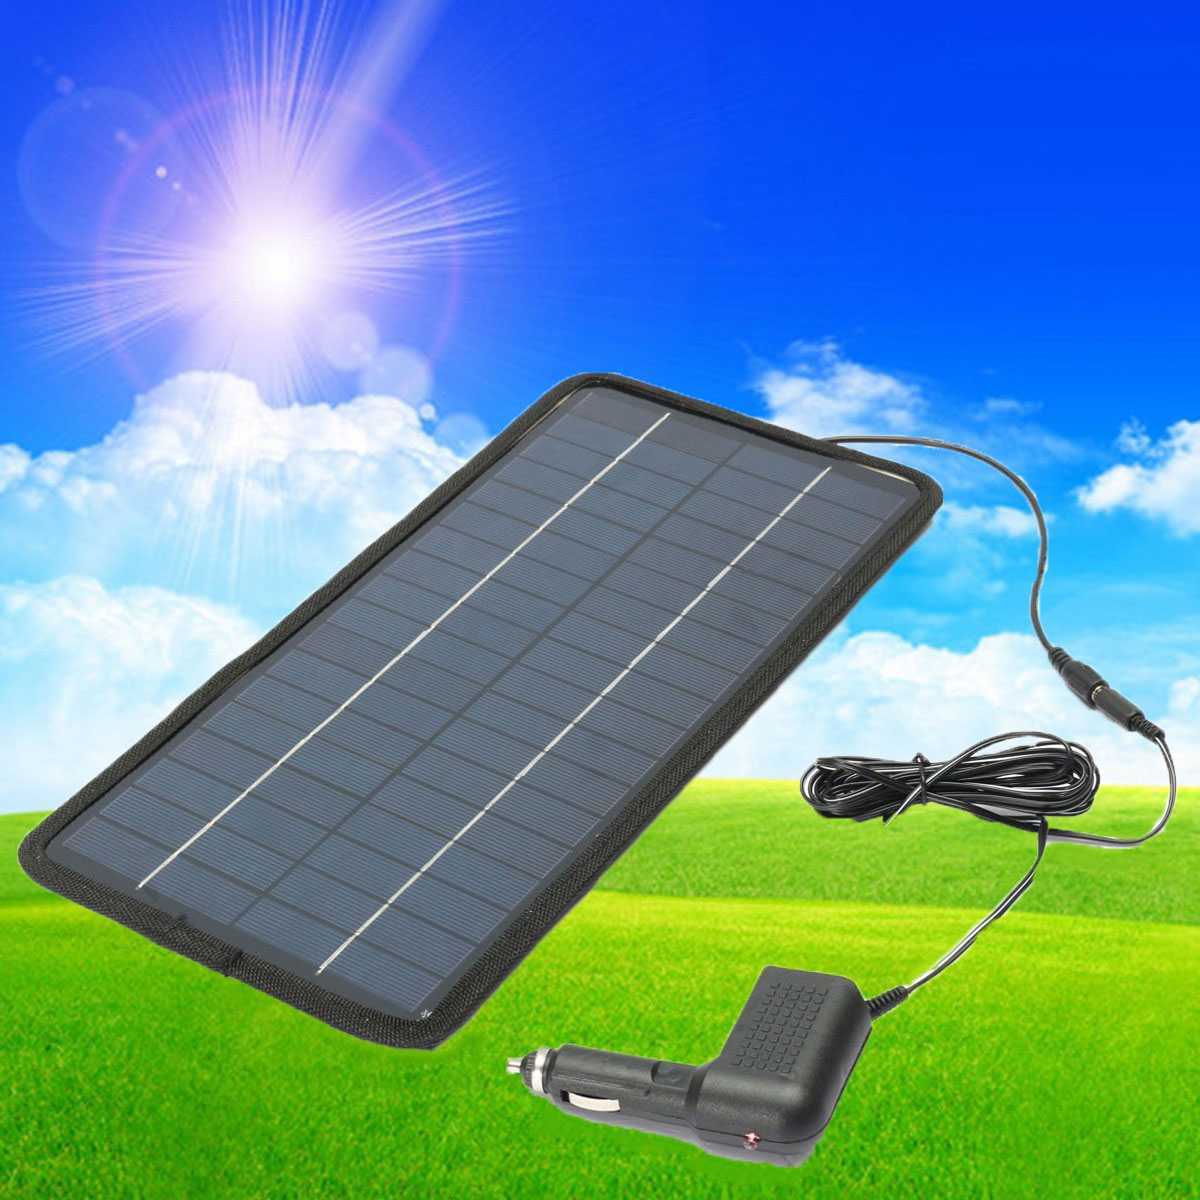 Солнечная зарядка автомобильных аккумуляторов. Солнечная панель YH 8045. Lx6009 Солнечная батарея. ДНС Солнечная панель. Солнечные батареи MPS 360m.